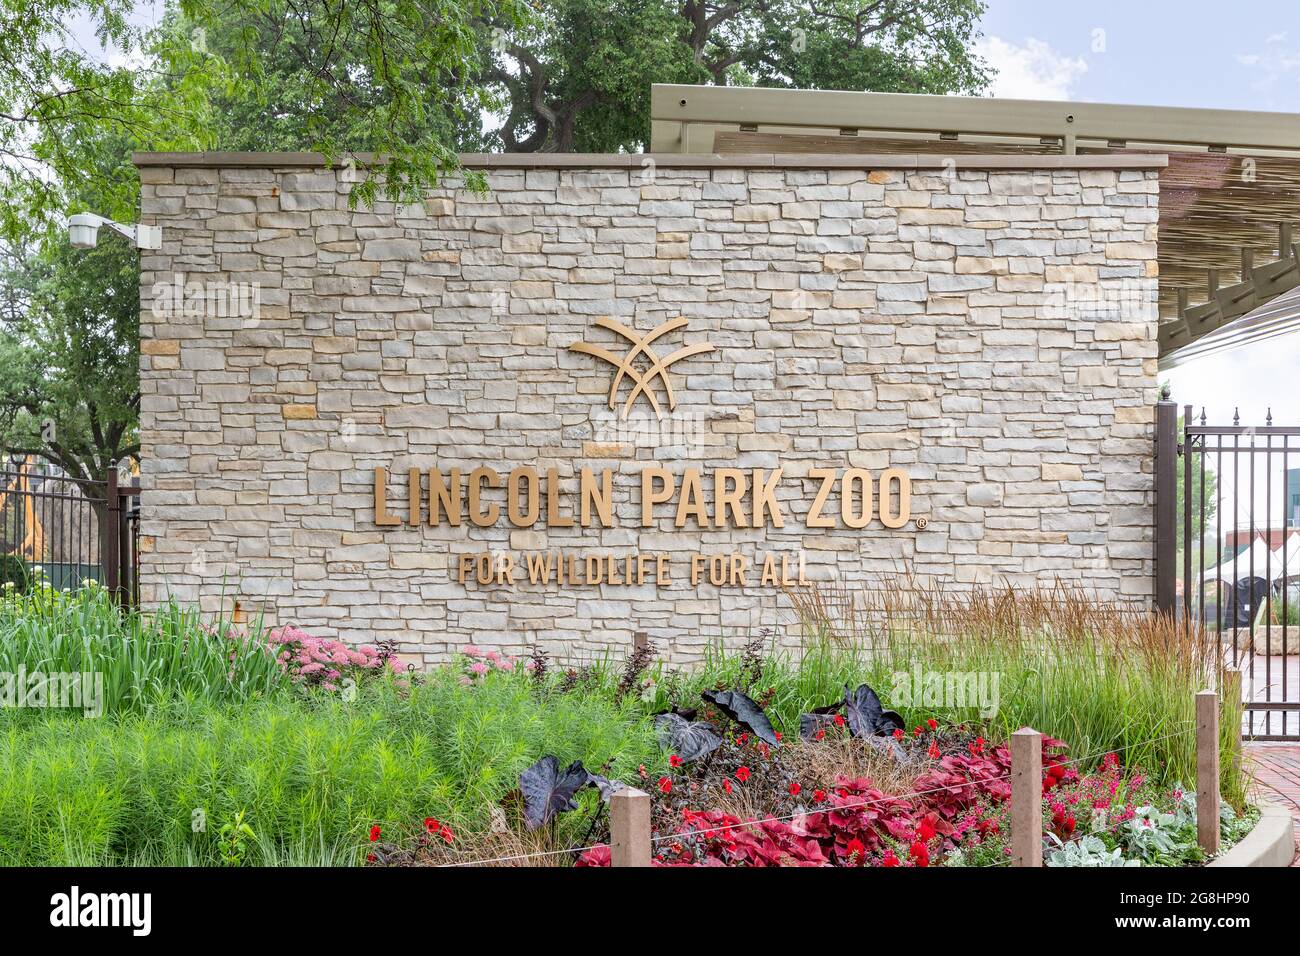 El exterior del Lincoln Park Zoo en el barrio Lincoln Park de Chicago. Este zoológico es gratuito para todos los años y cuenta con 1.100 animales. Foto de stock